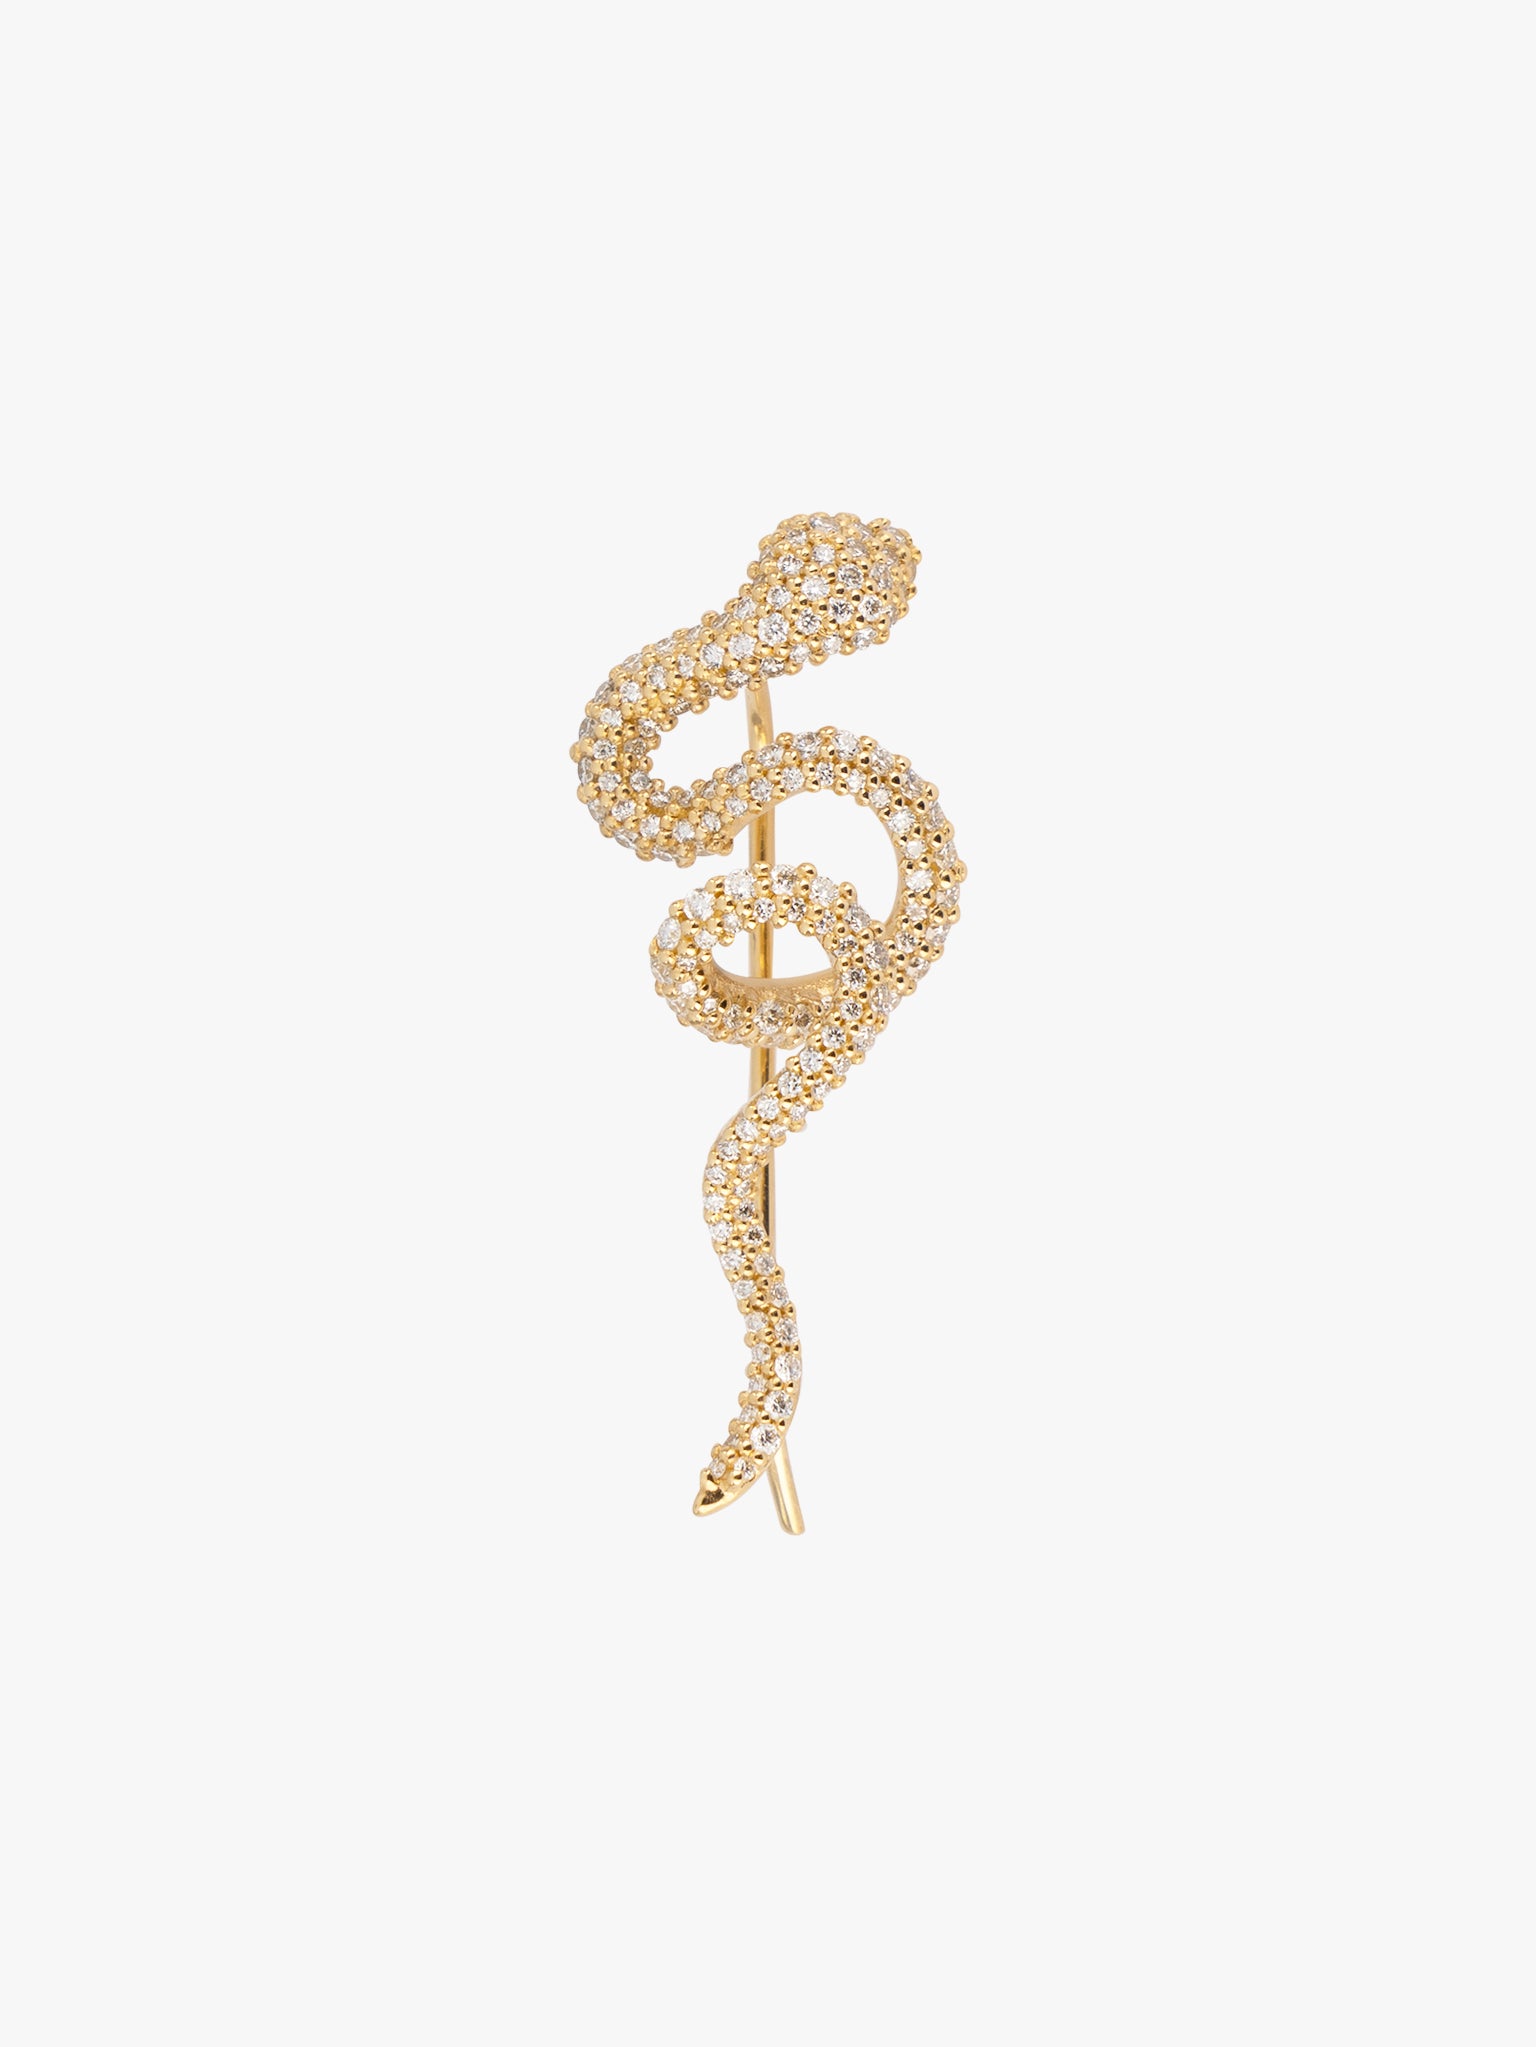 Snake ear climber with pavé diamonds